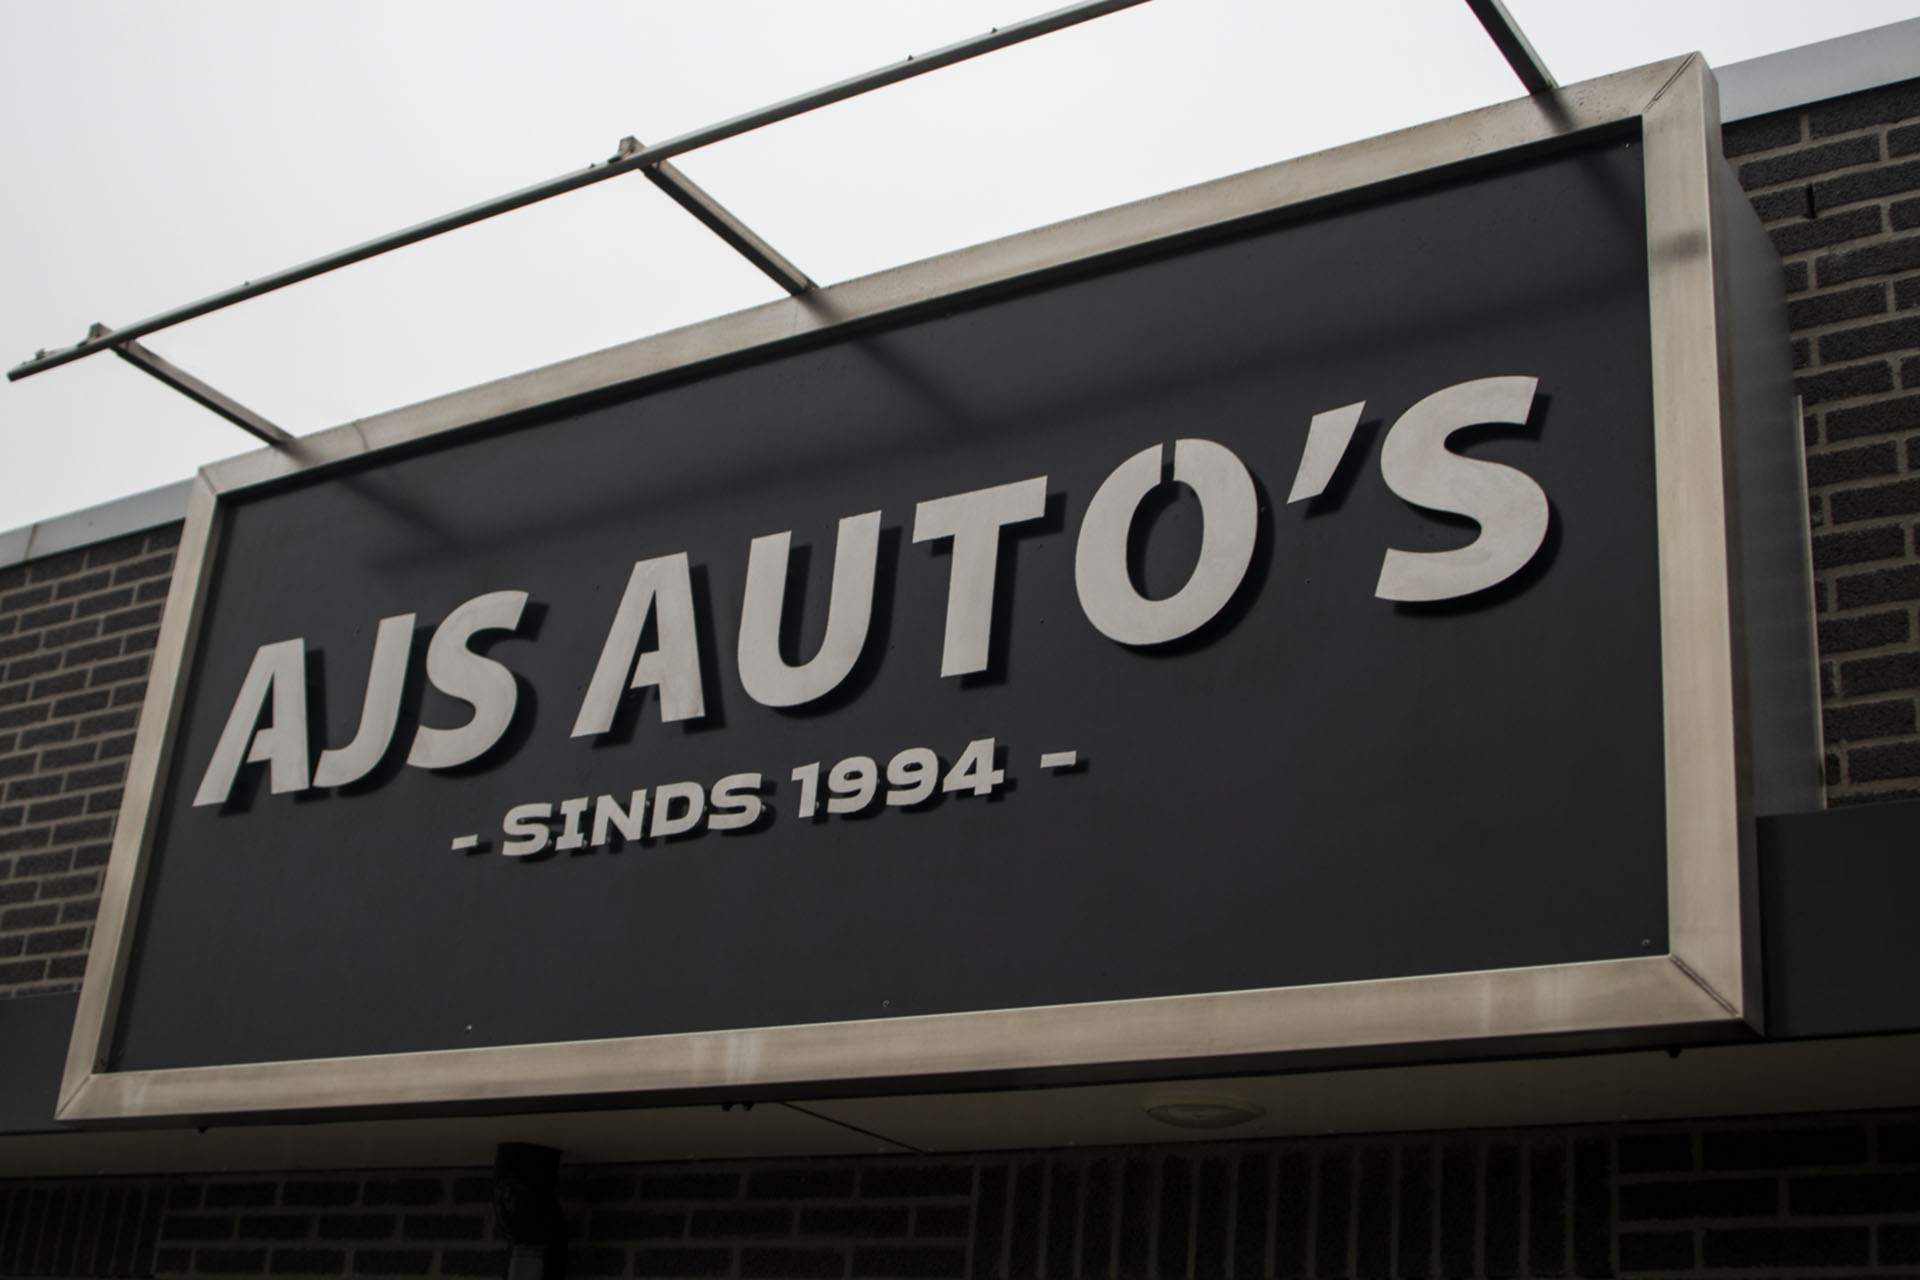 AJS Auto's - Sinds 1994